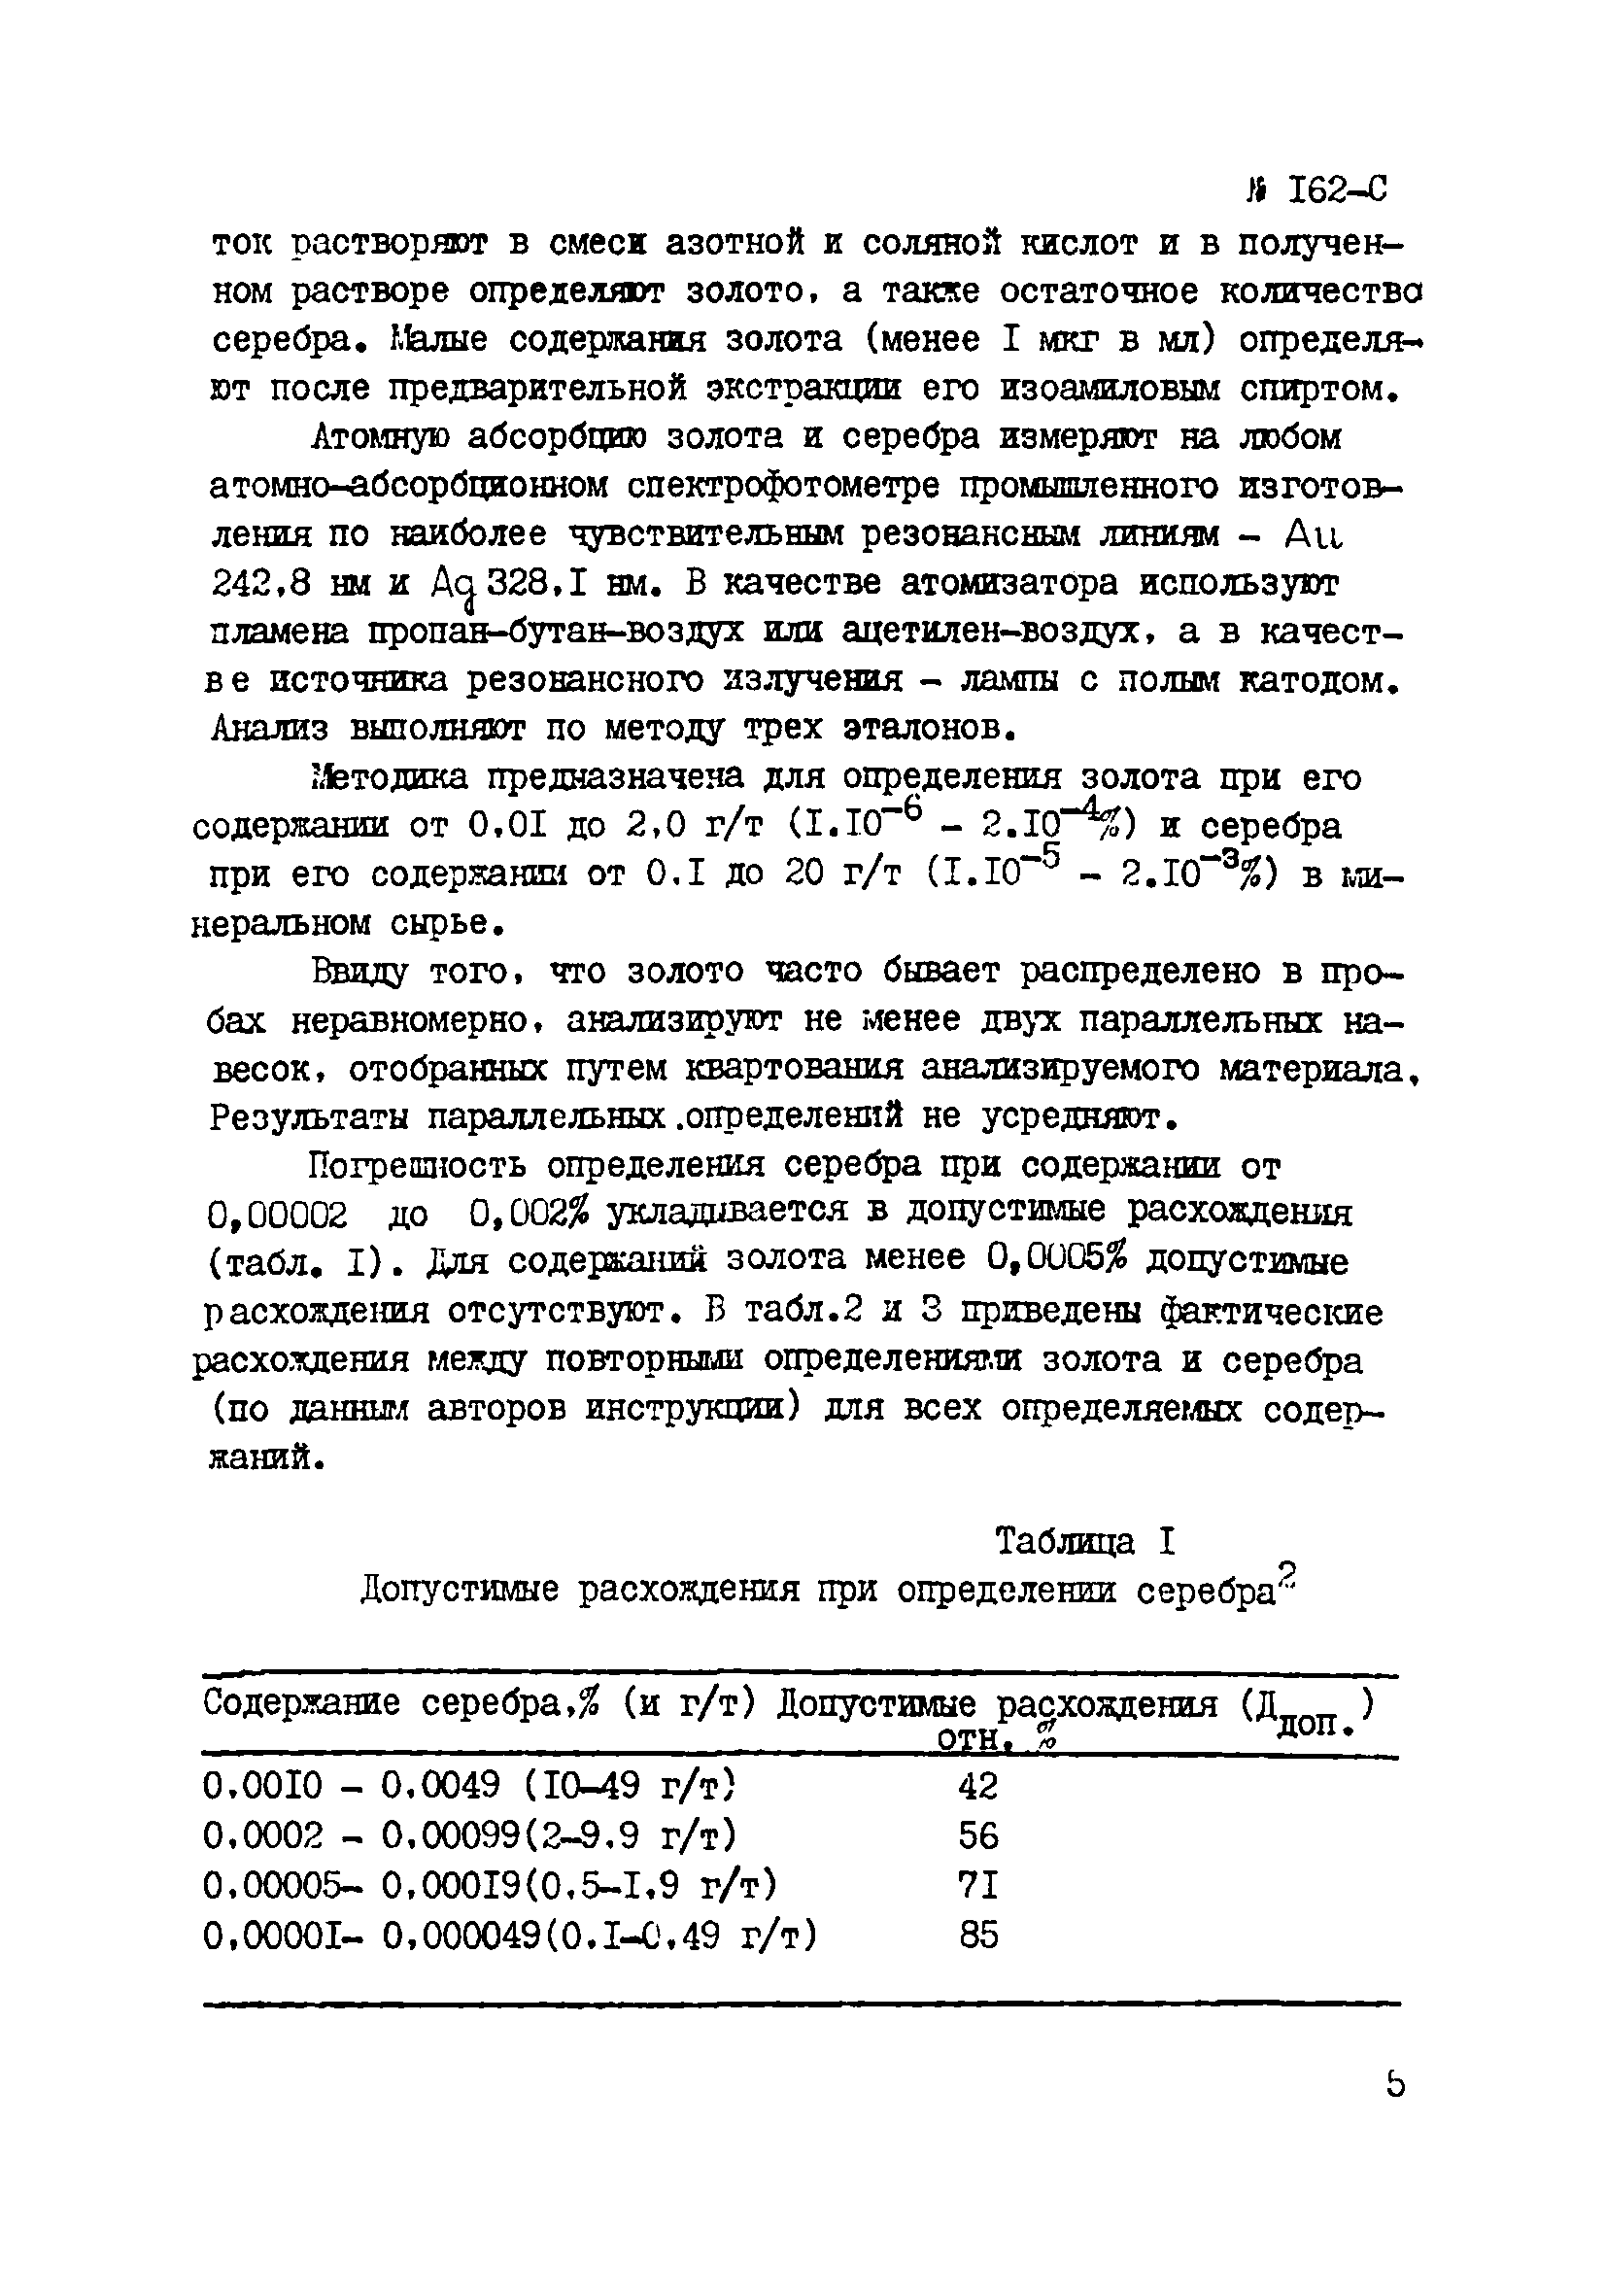 Инструкция НСАМ 162-С